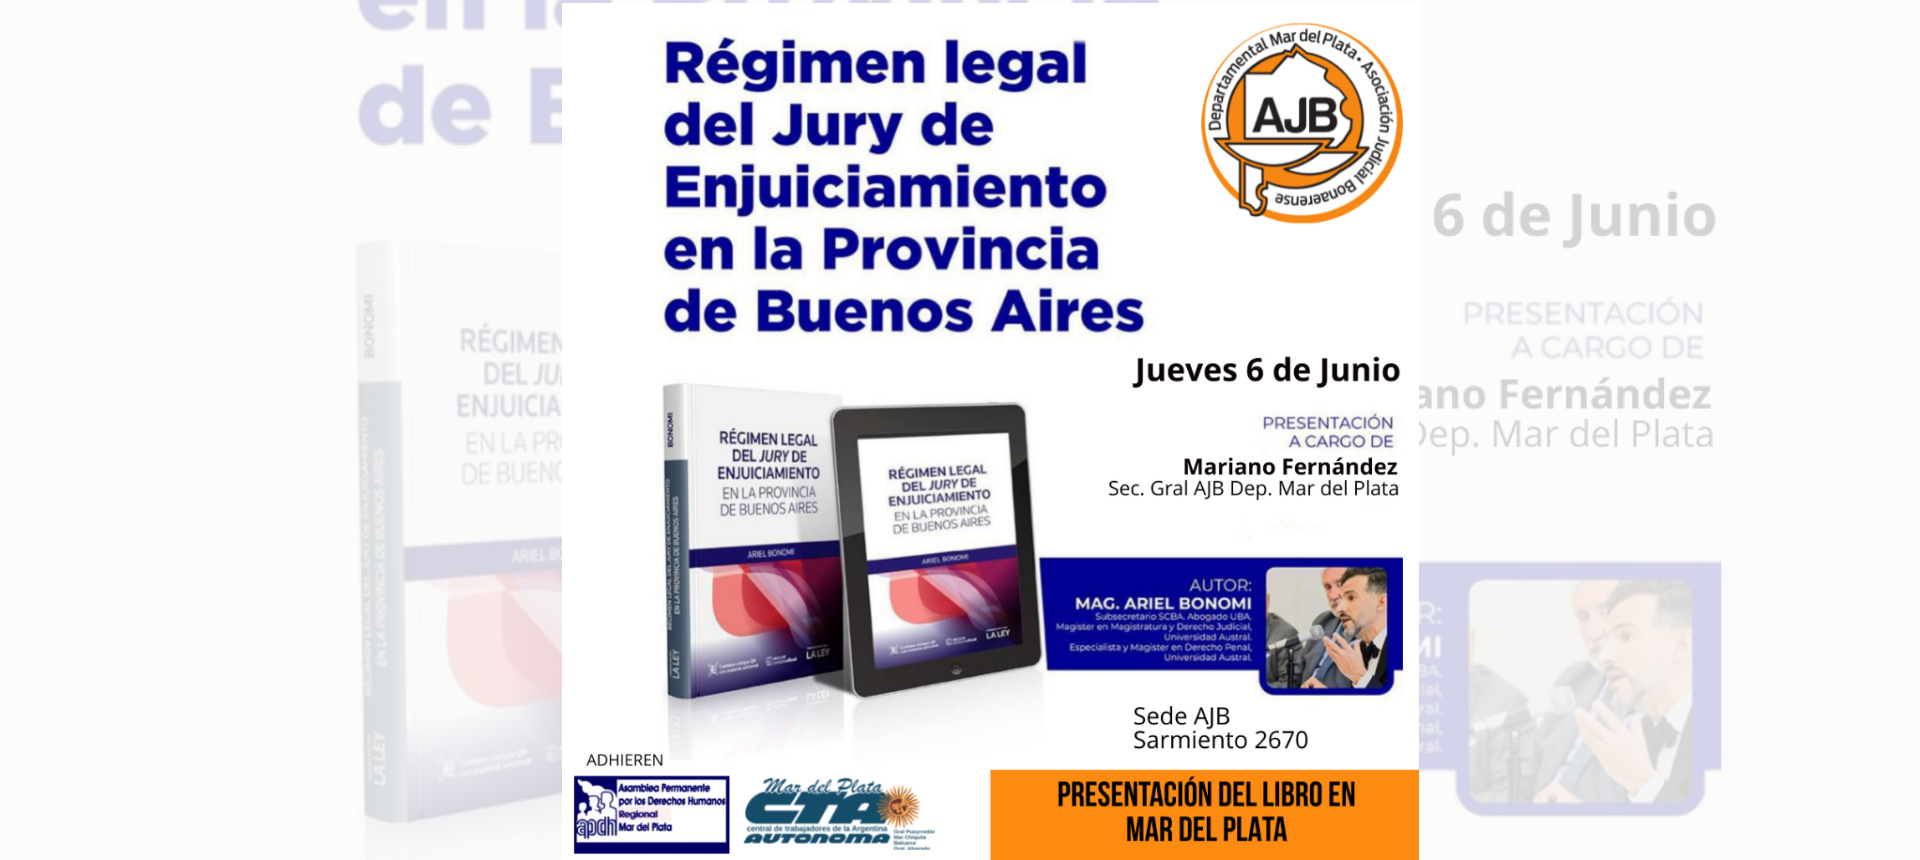 Régimen legal del Jury de Enjuiciamiento en la Provincia de Buenos Aires